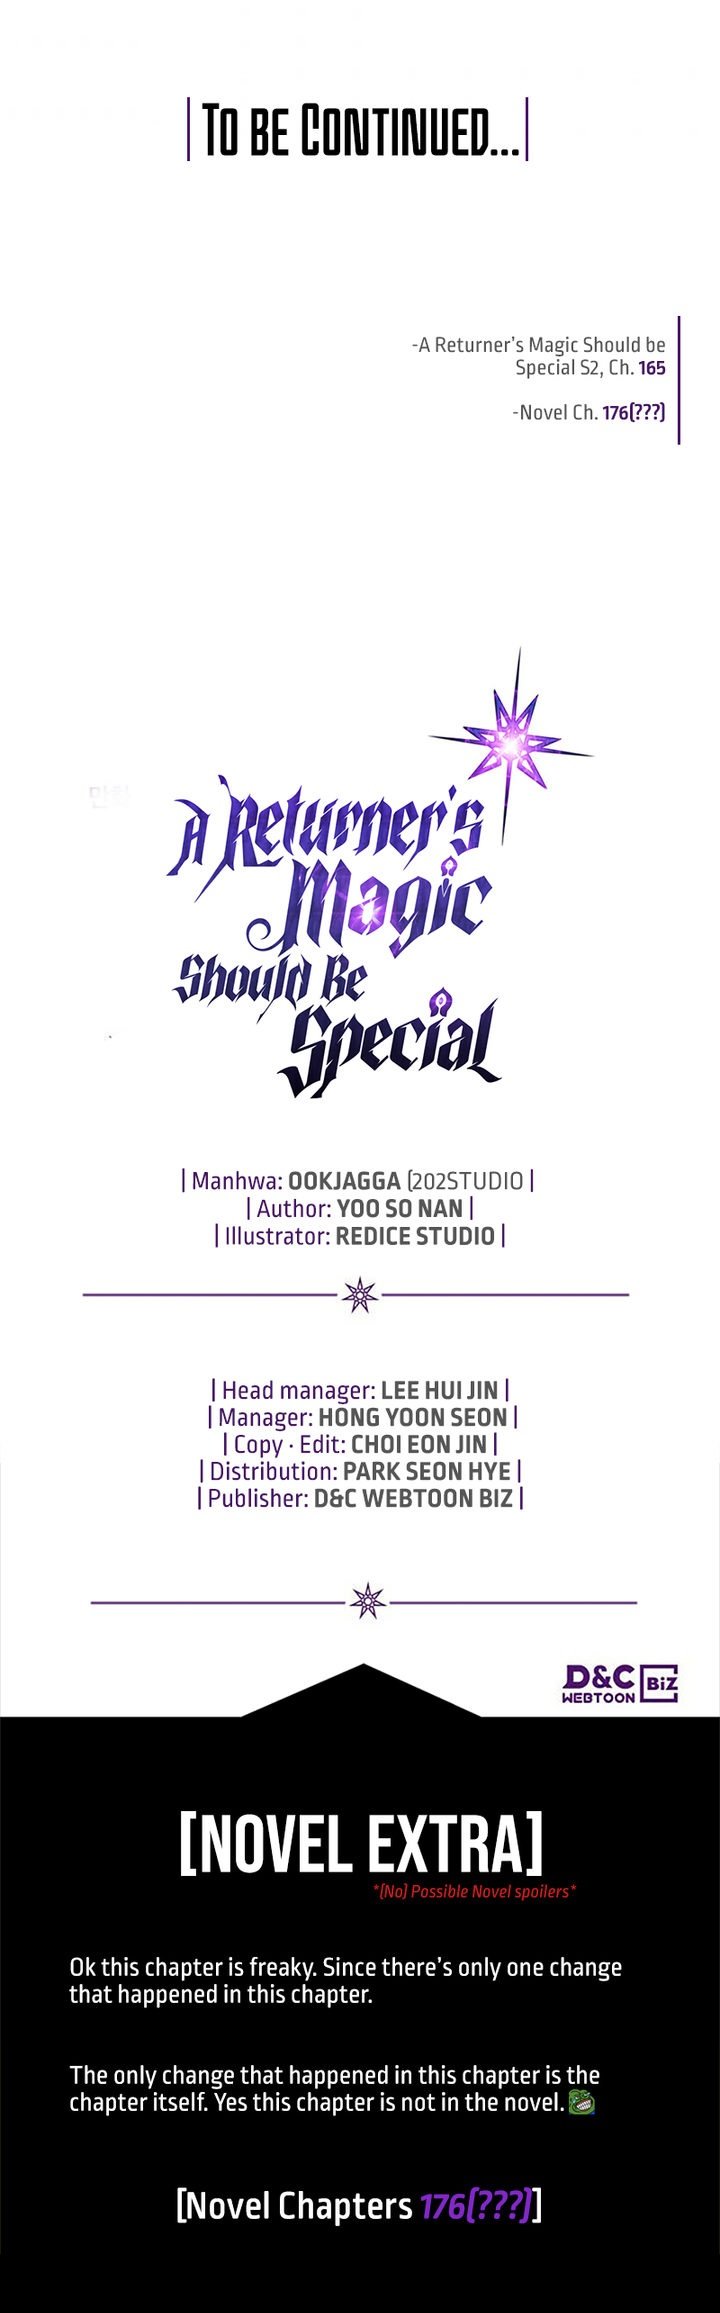 a-returners-magic-should-be-special-chap-165-13